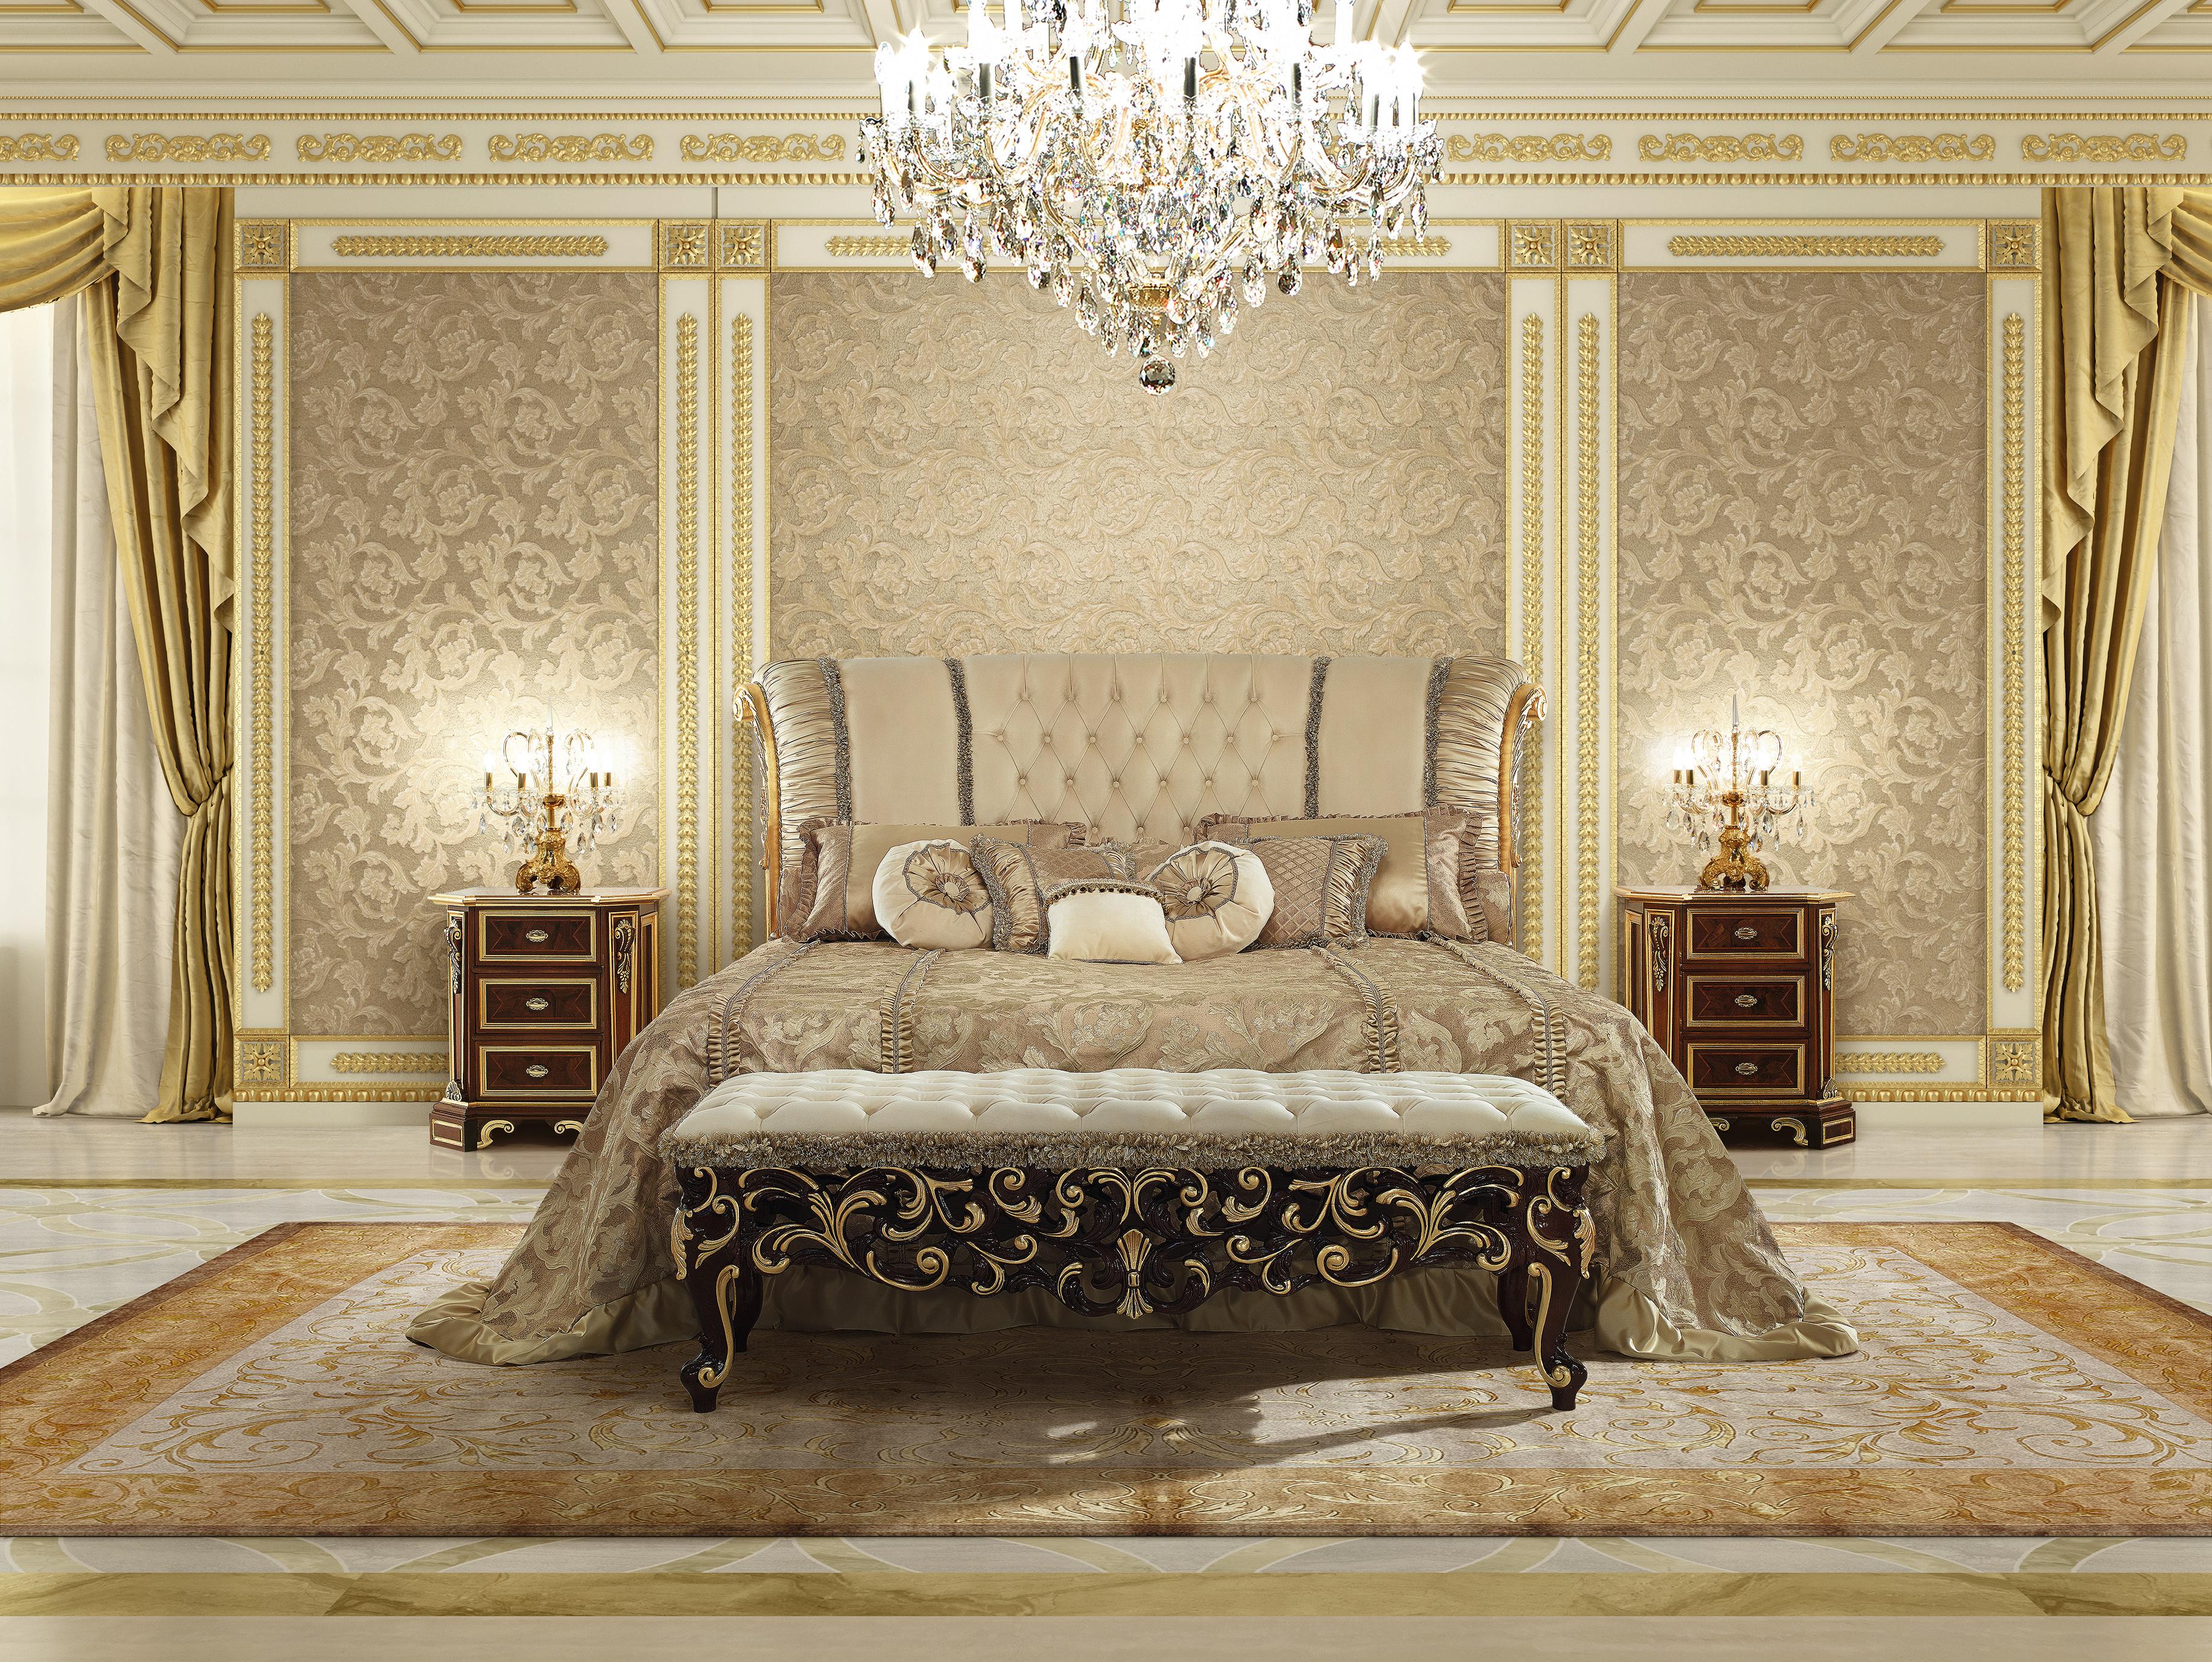 Complément unique de l'un des designs de lit de luxe exclusifs de Modenese Luxury Interiors, ce banc de lit transmet un sentiment absolu de détente intemporelle. Doucement et élégamment rembourré avec un cuir ivoire précieux, rehaussé d'un profil